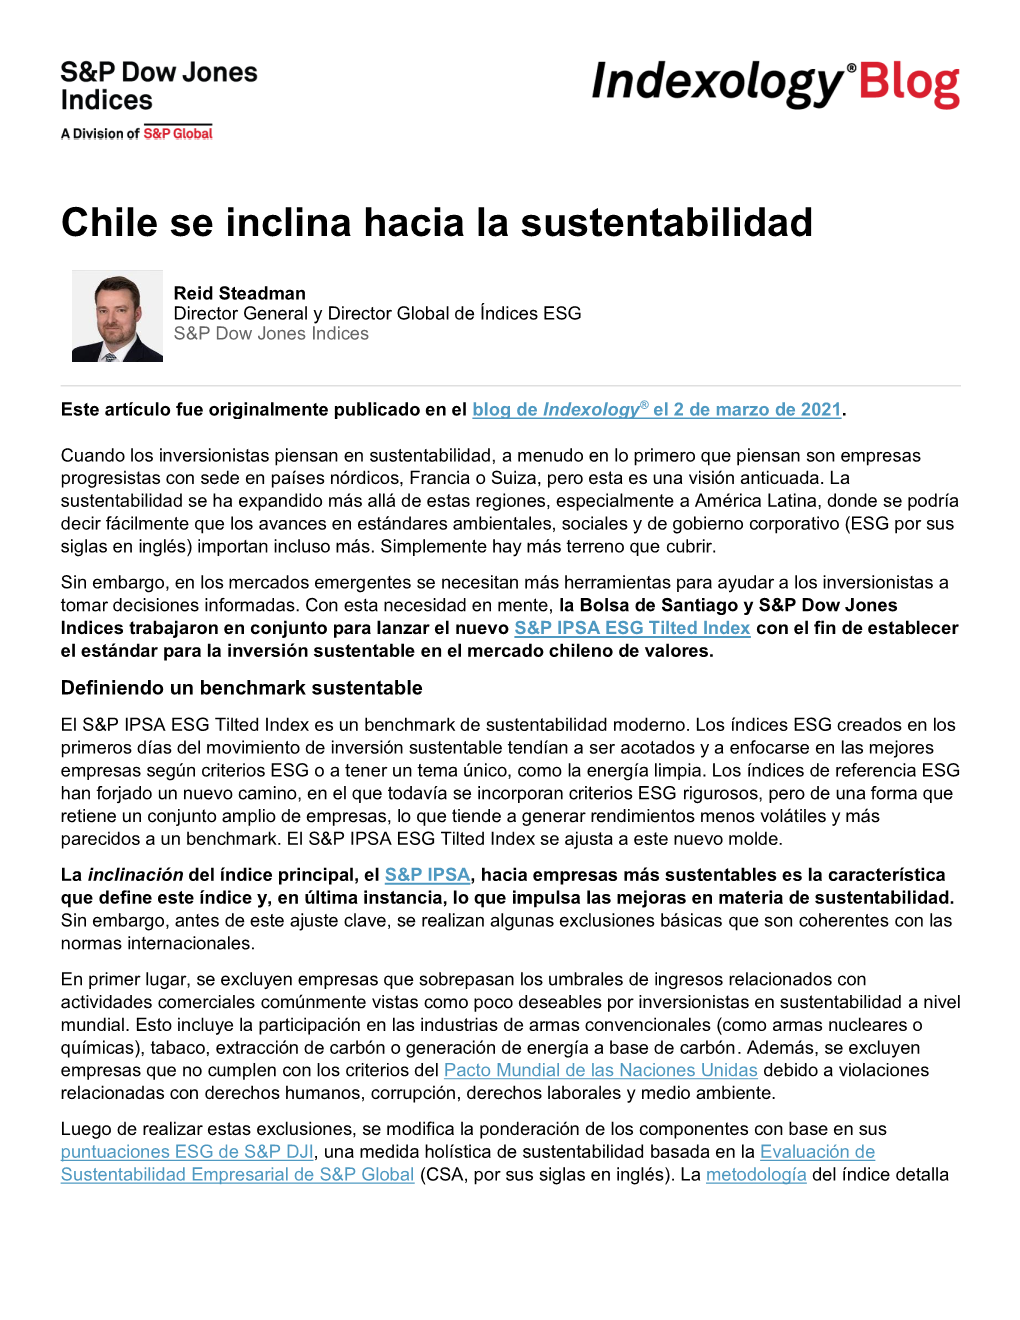 Chile Se Inclina Hacia La Sustentabilidad